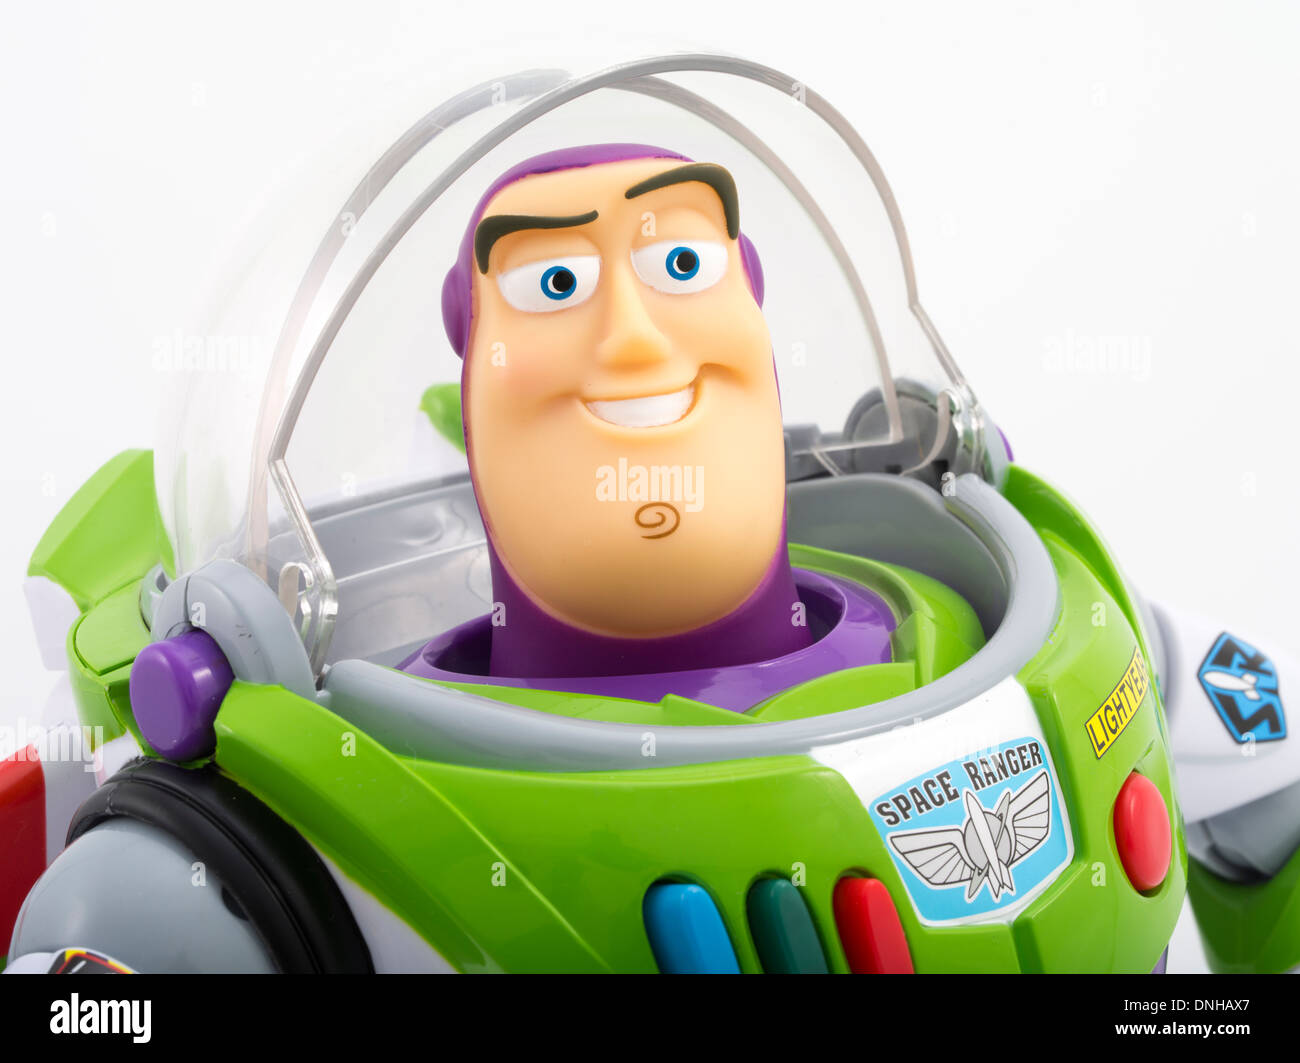 Buzz Lightyear ikonischen Kinderspielzeug aus Toy Story Film produziert von Thinkway Toys Stockfoto